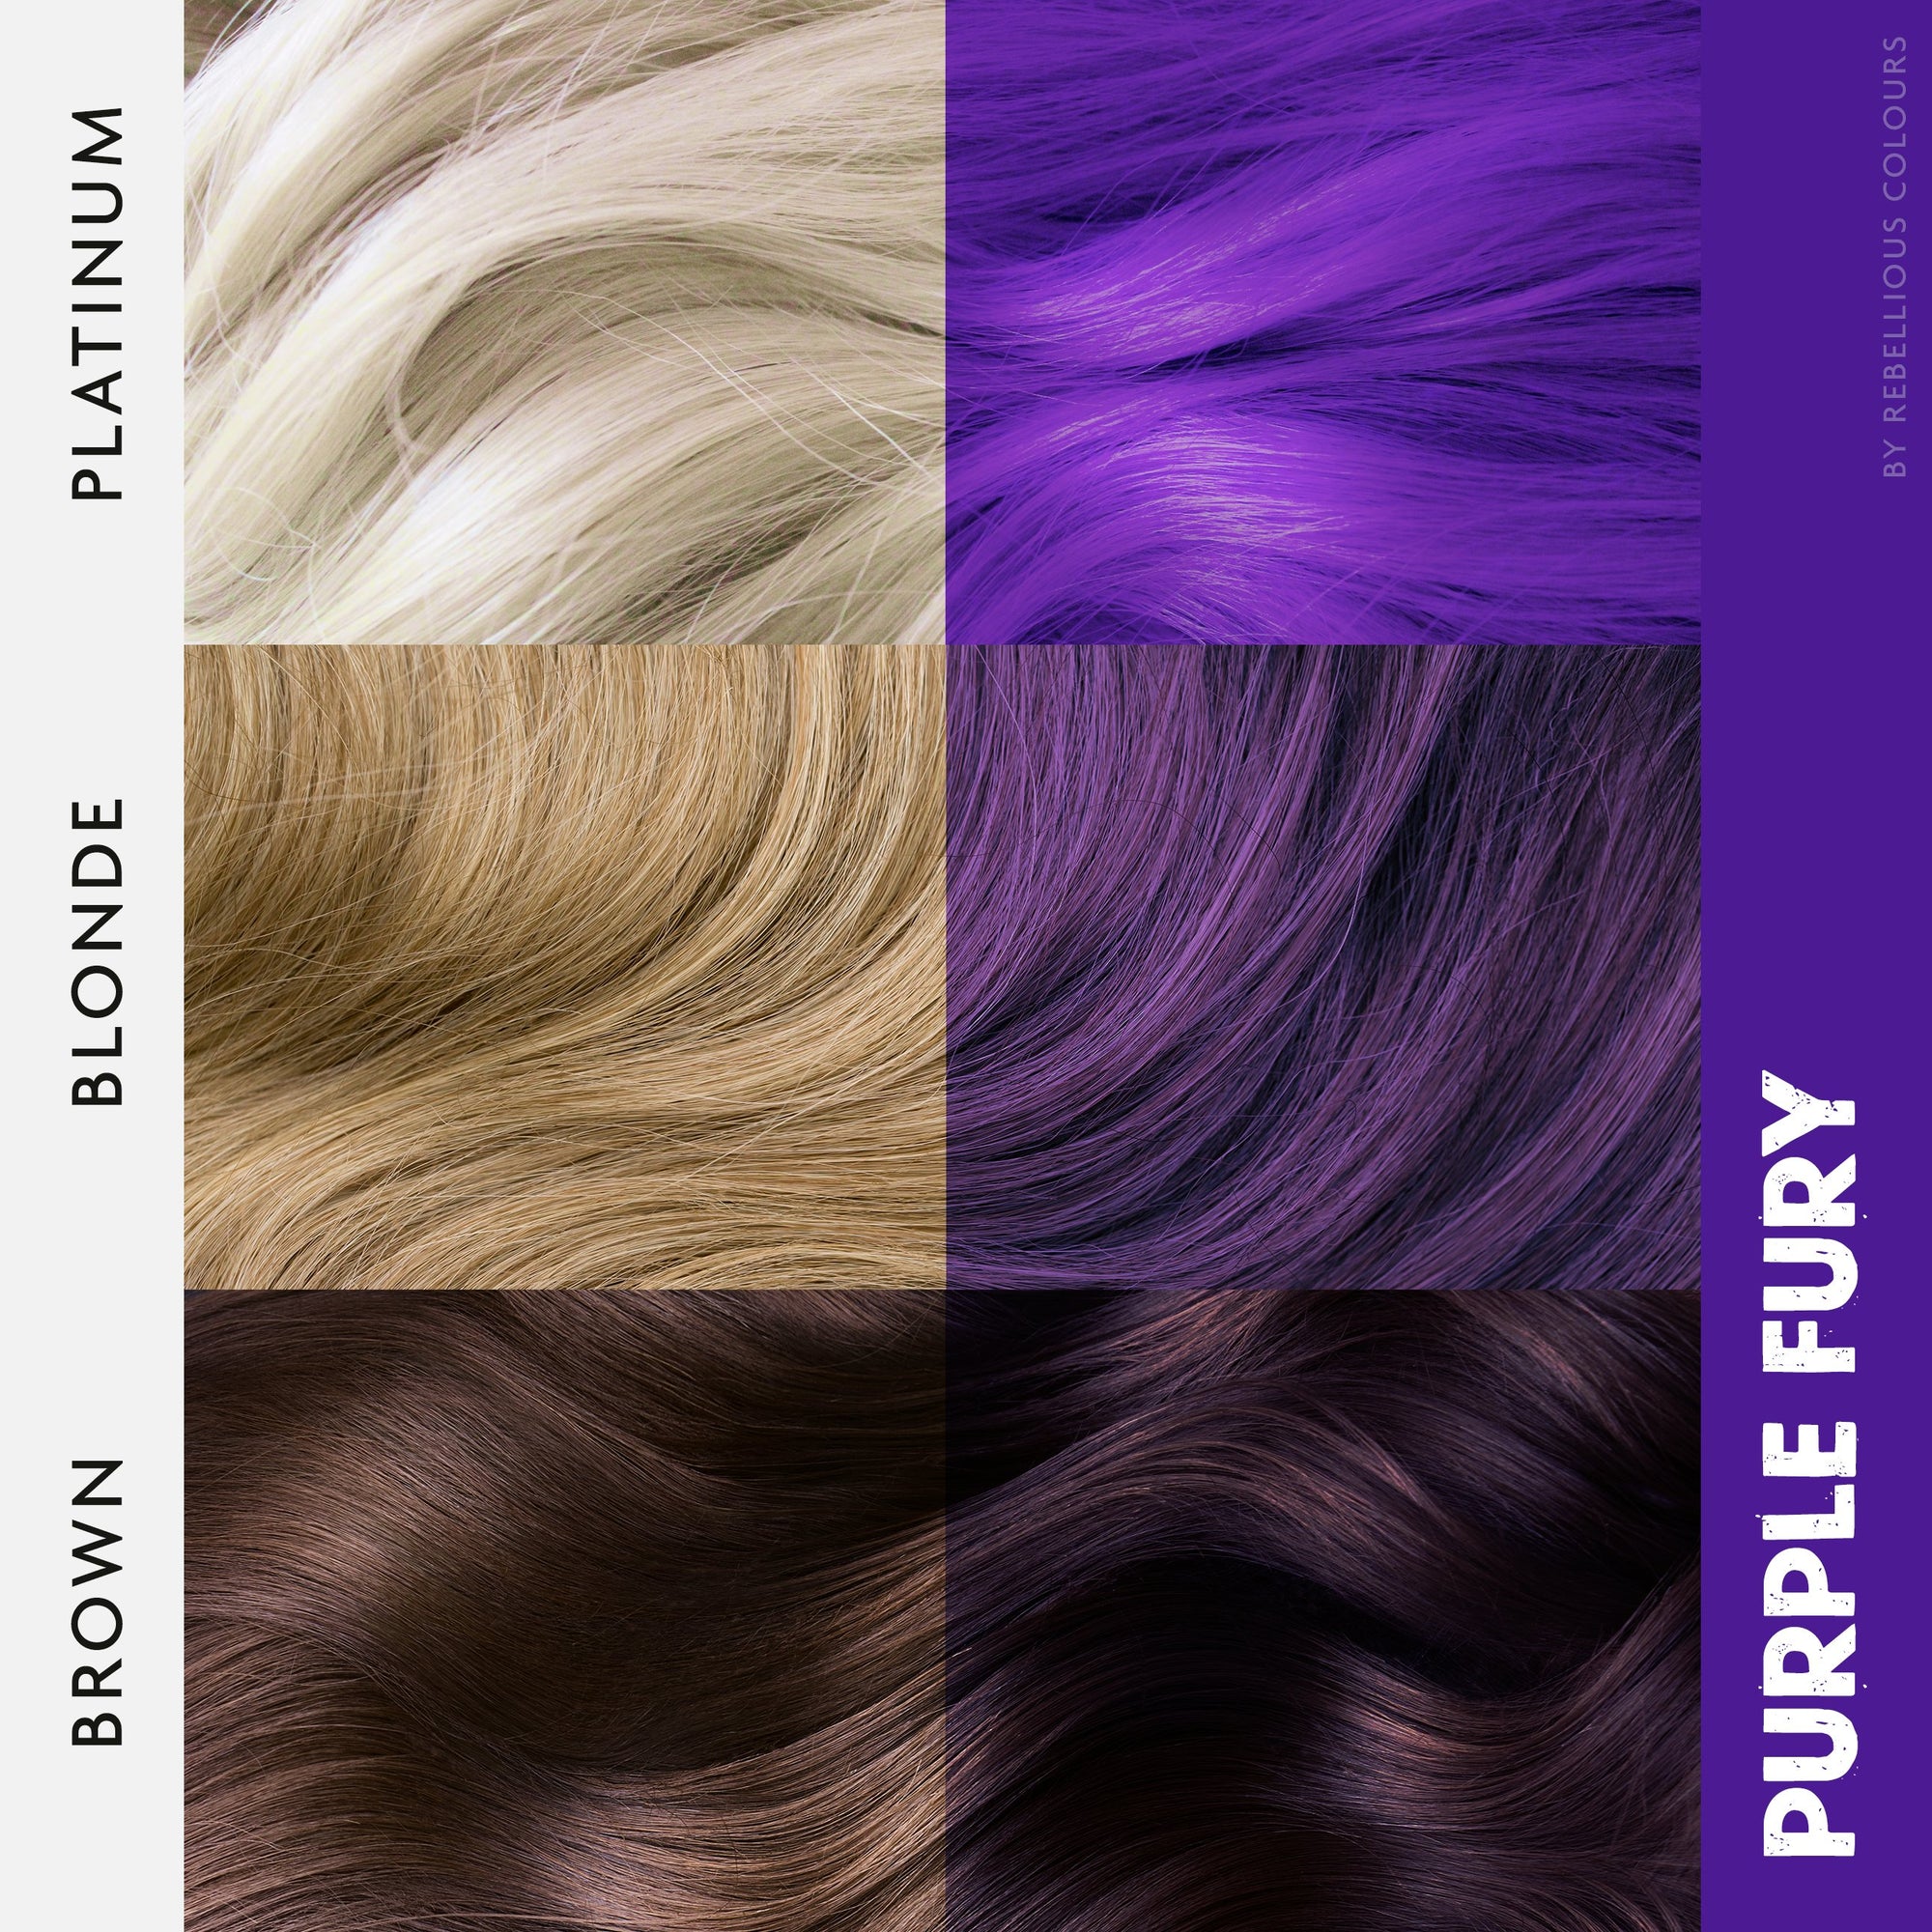 Rebellious Semi-Permanent Hair Dye, Glowsticks Ltd